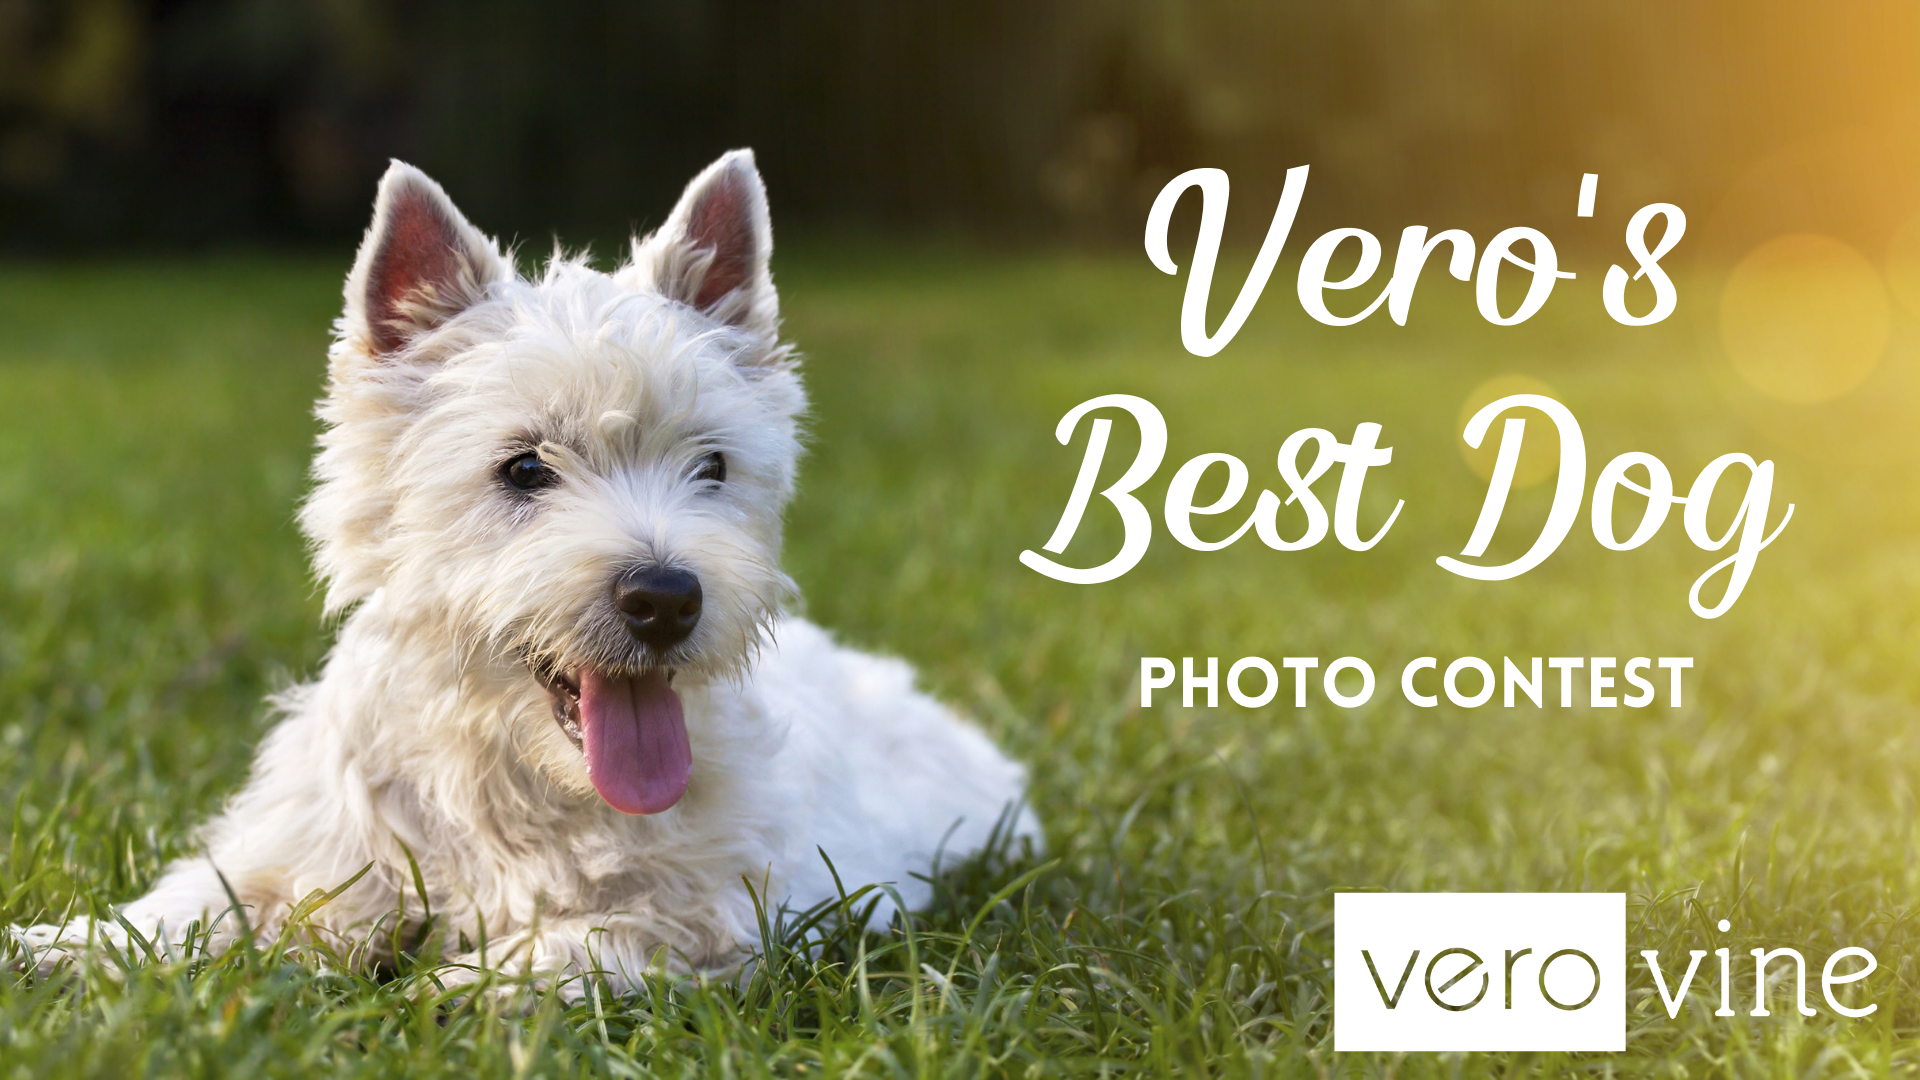 Vero's Best Dog Photo Contest 2021